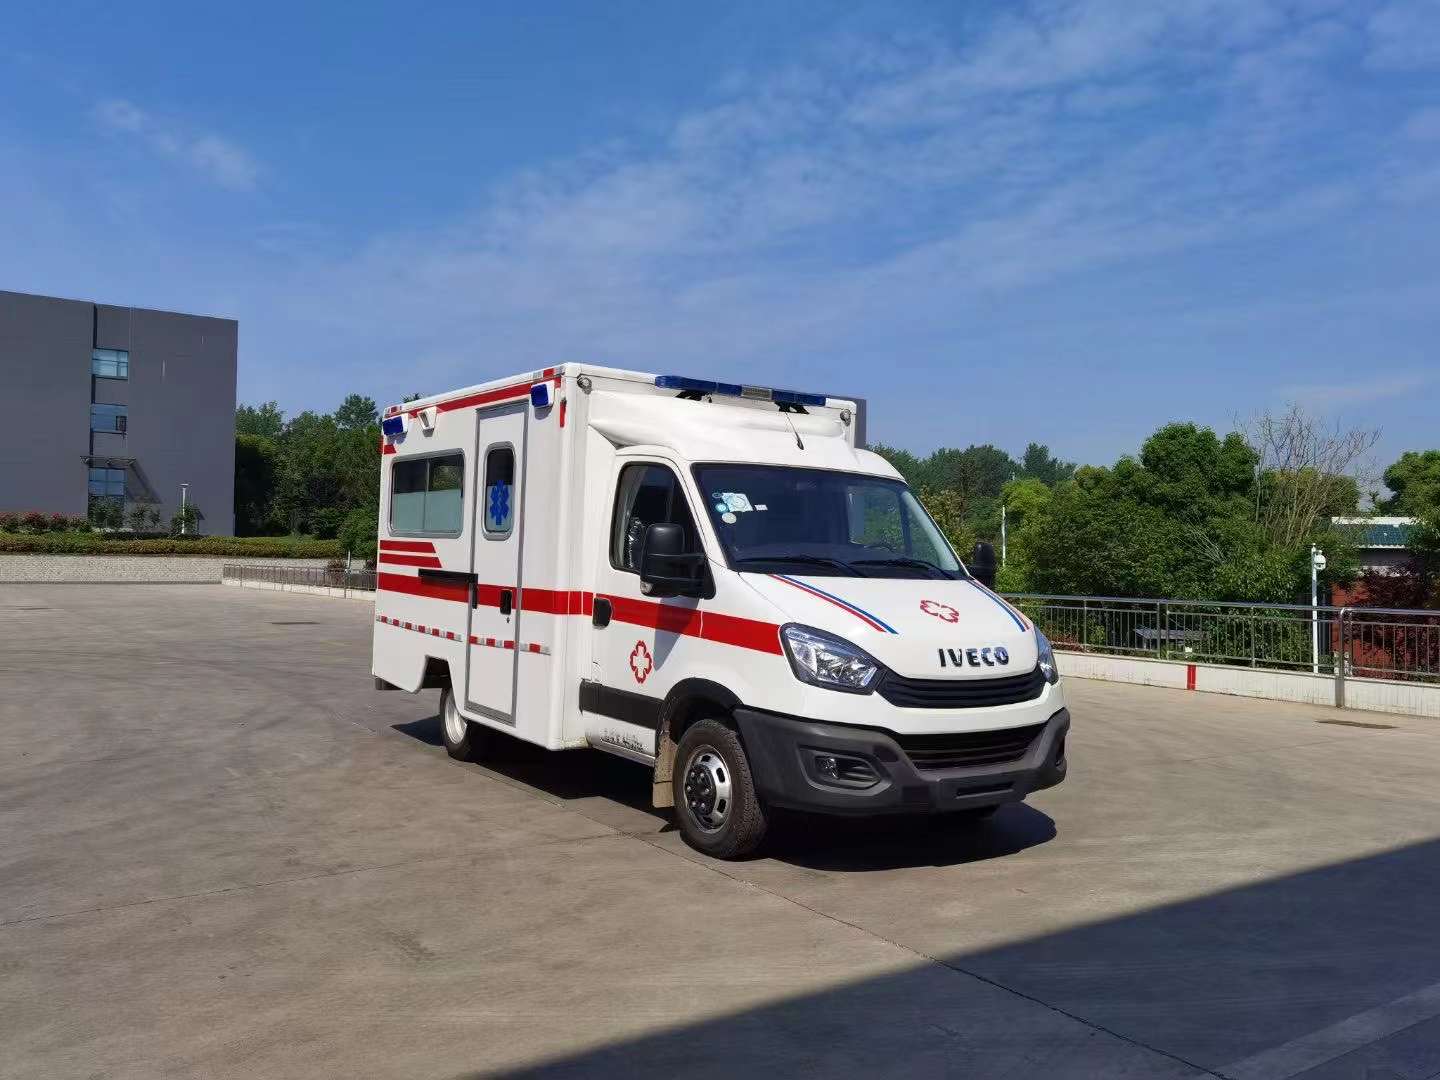 南川跨省120救护车预约服务/救护车转院随叫随到